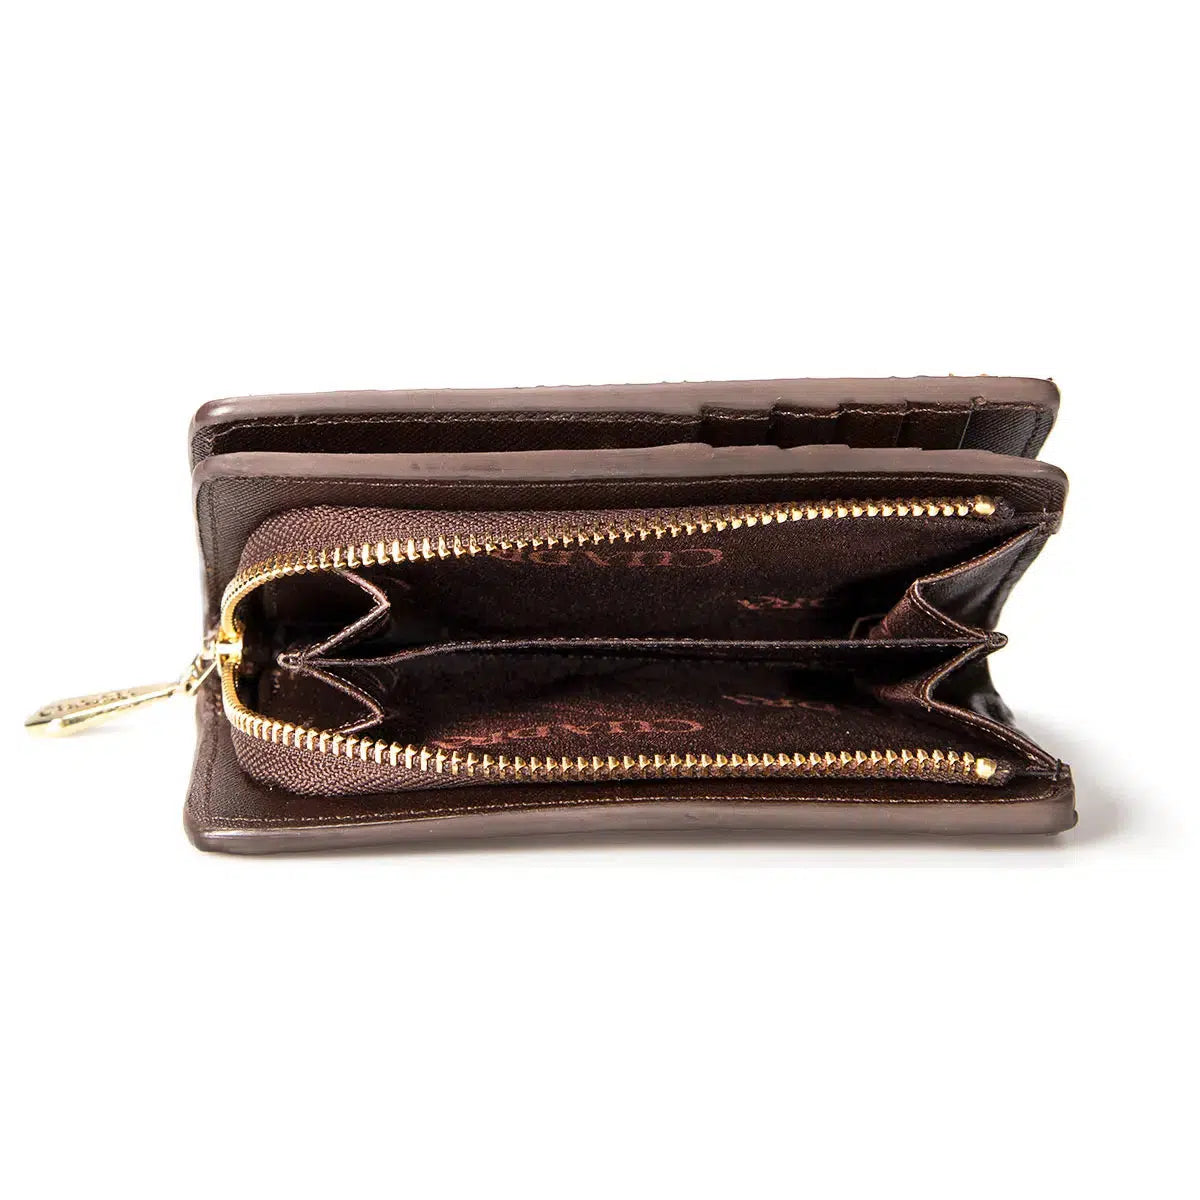 Bifold Long Wallet, Leather Clutch Women, Wristlet Wallet, Clutch